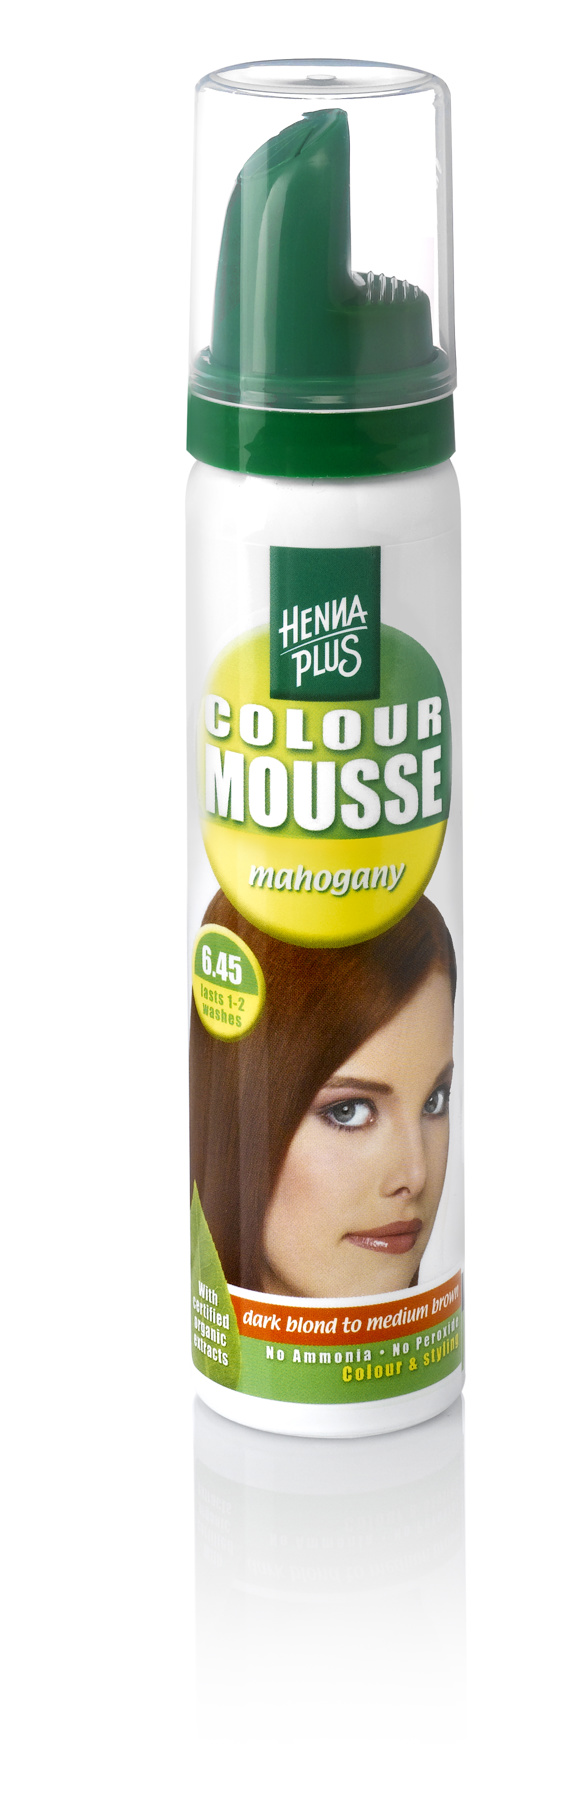 Colour Mousse Mahogany 6.45